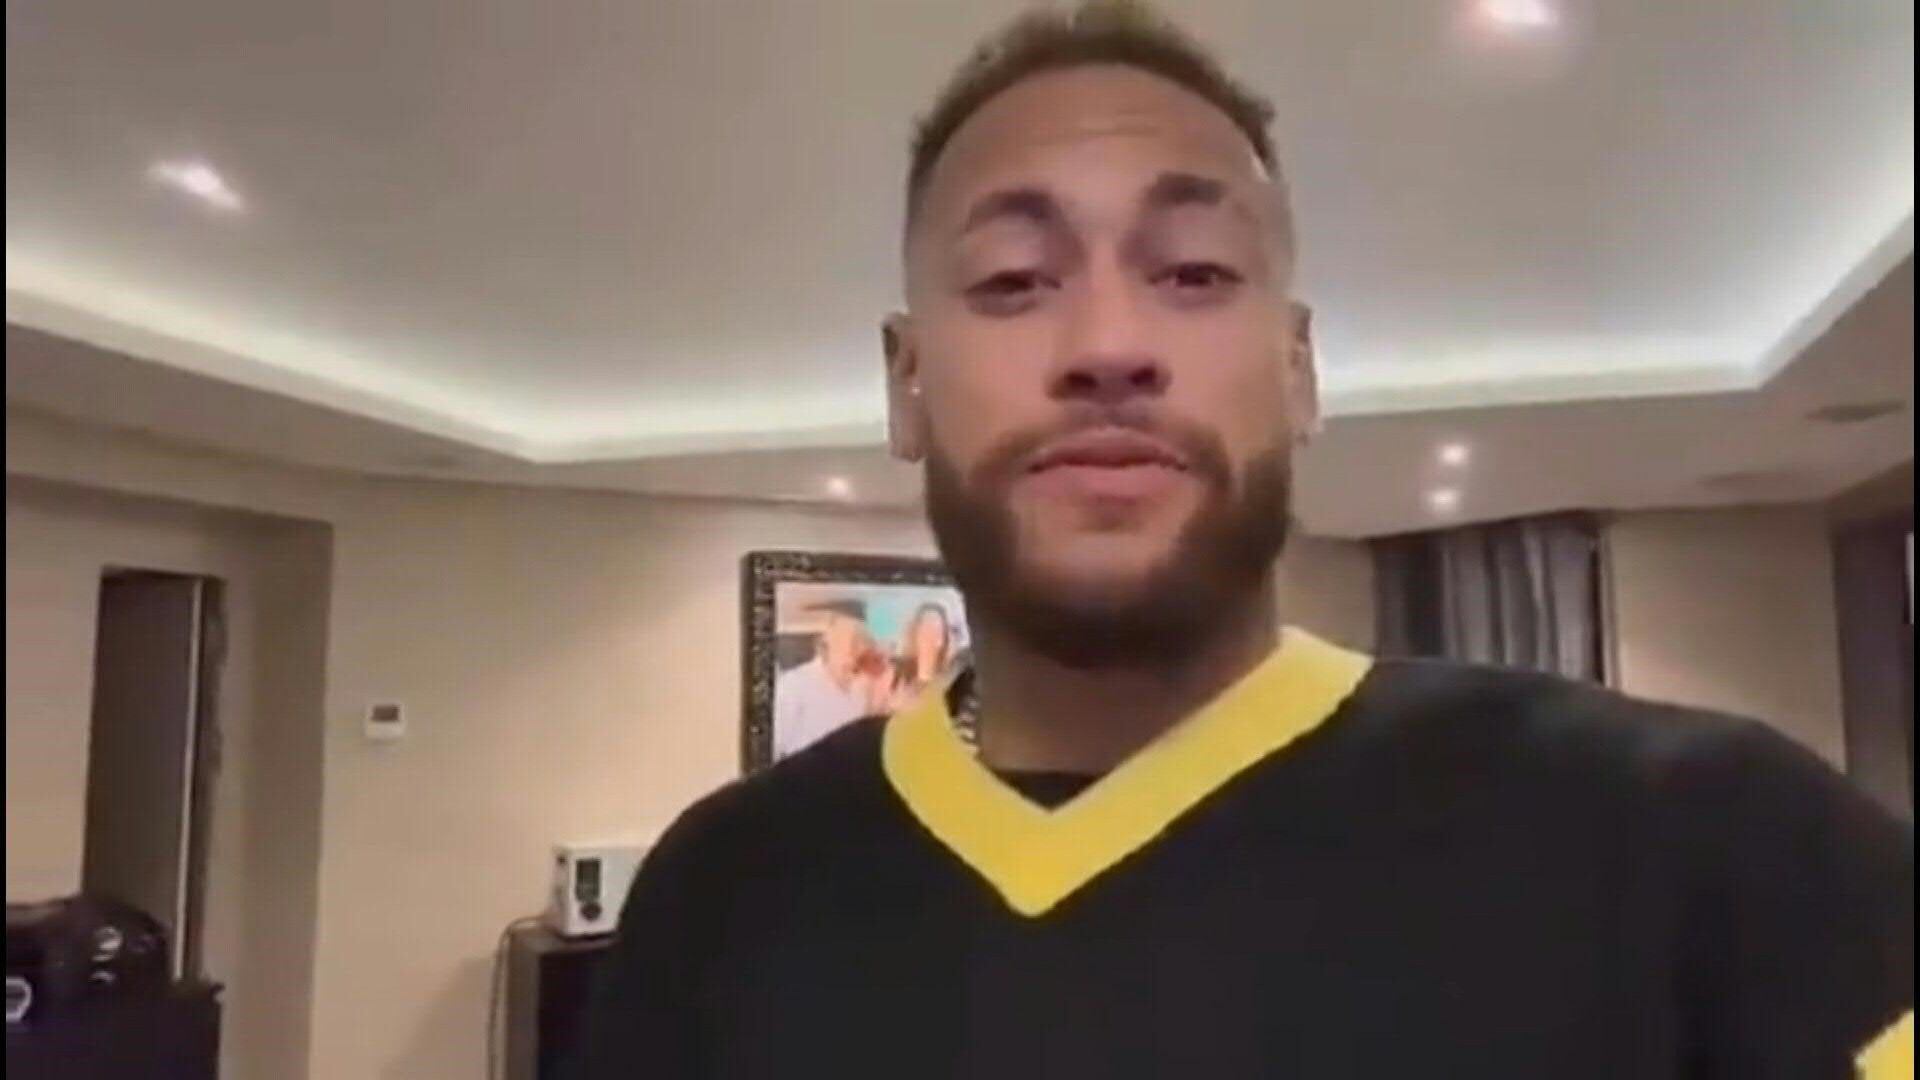 La estrella del fútbol Neymar agradeció la visita del presidente Jair Bolsonaro a un centro para niños que fundó en Brasil, en un video publicado este miércoles en la recta final de la campaña presidencial.